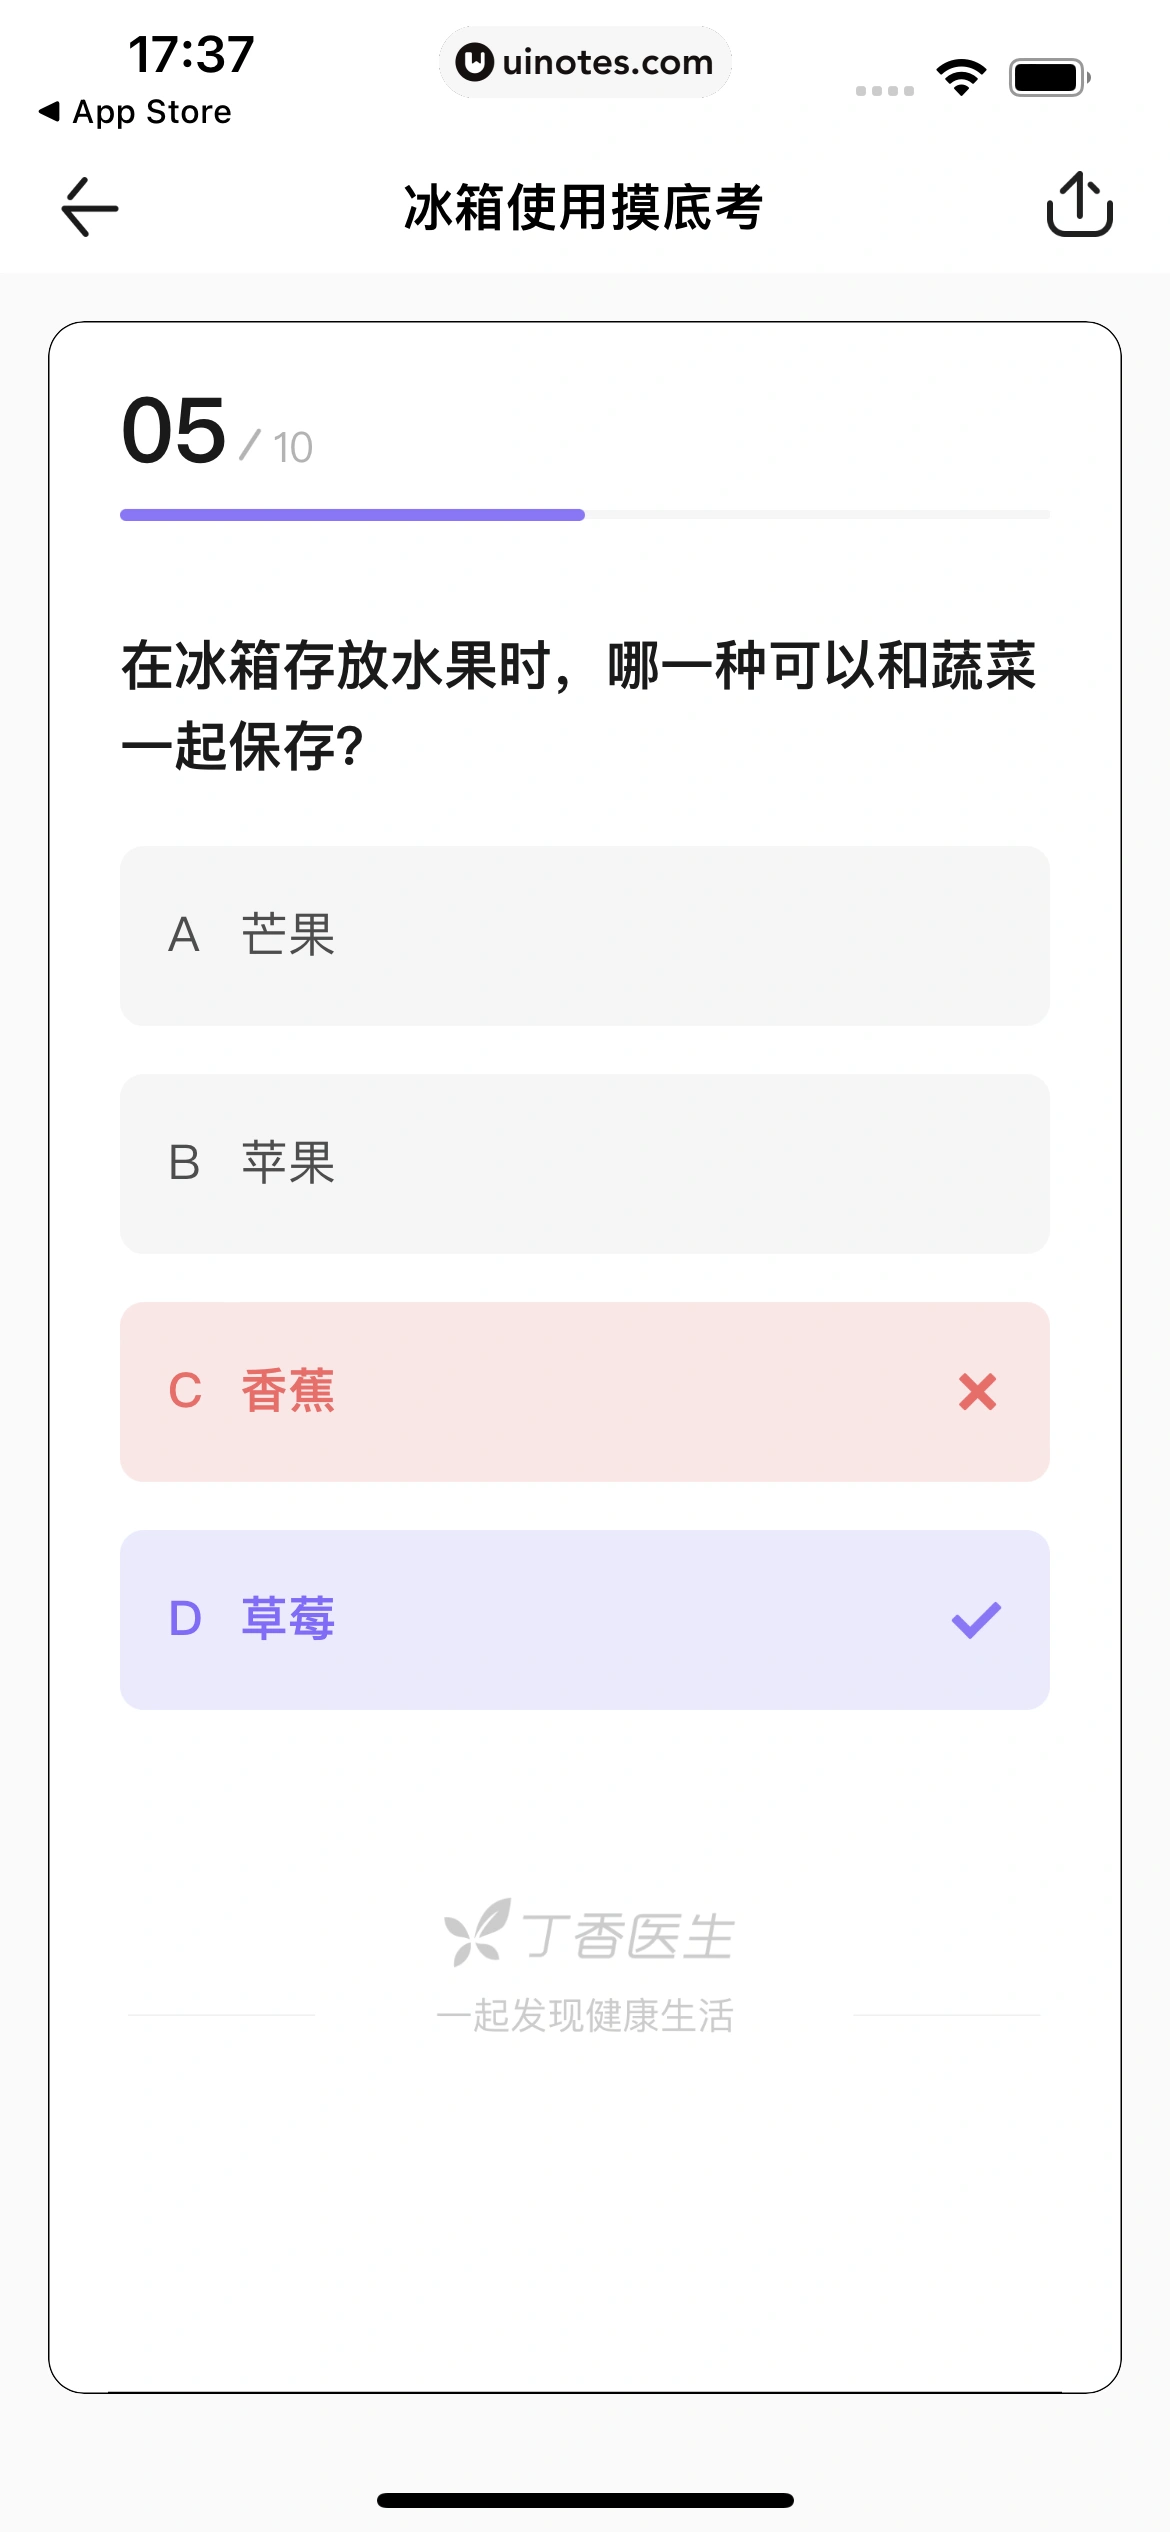 丁香医生 App 截图 079 - UI Notes